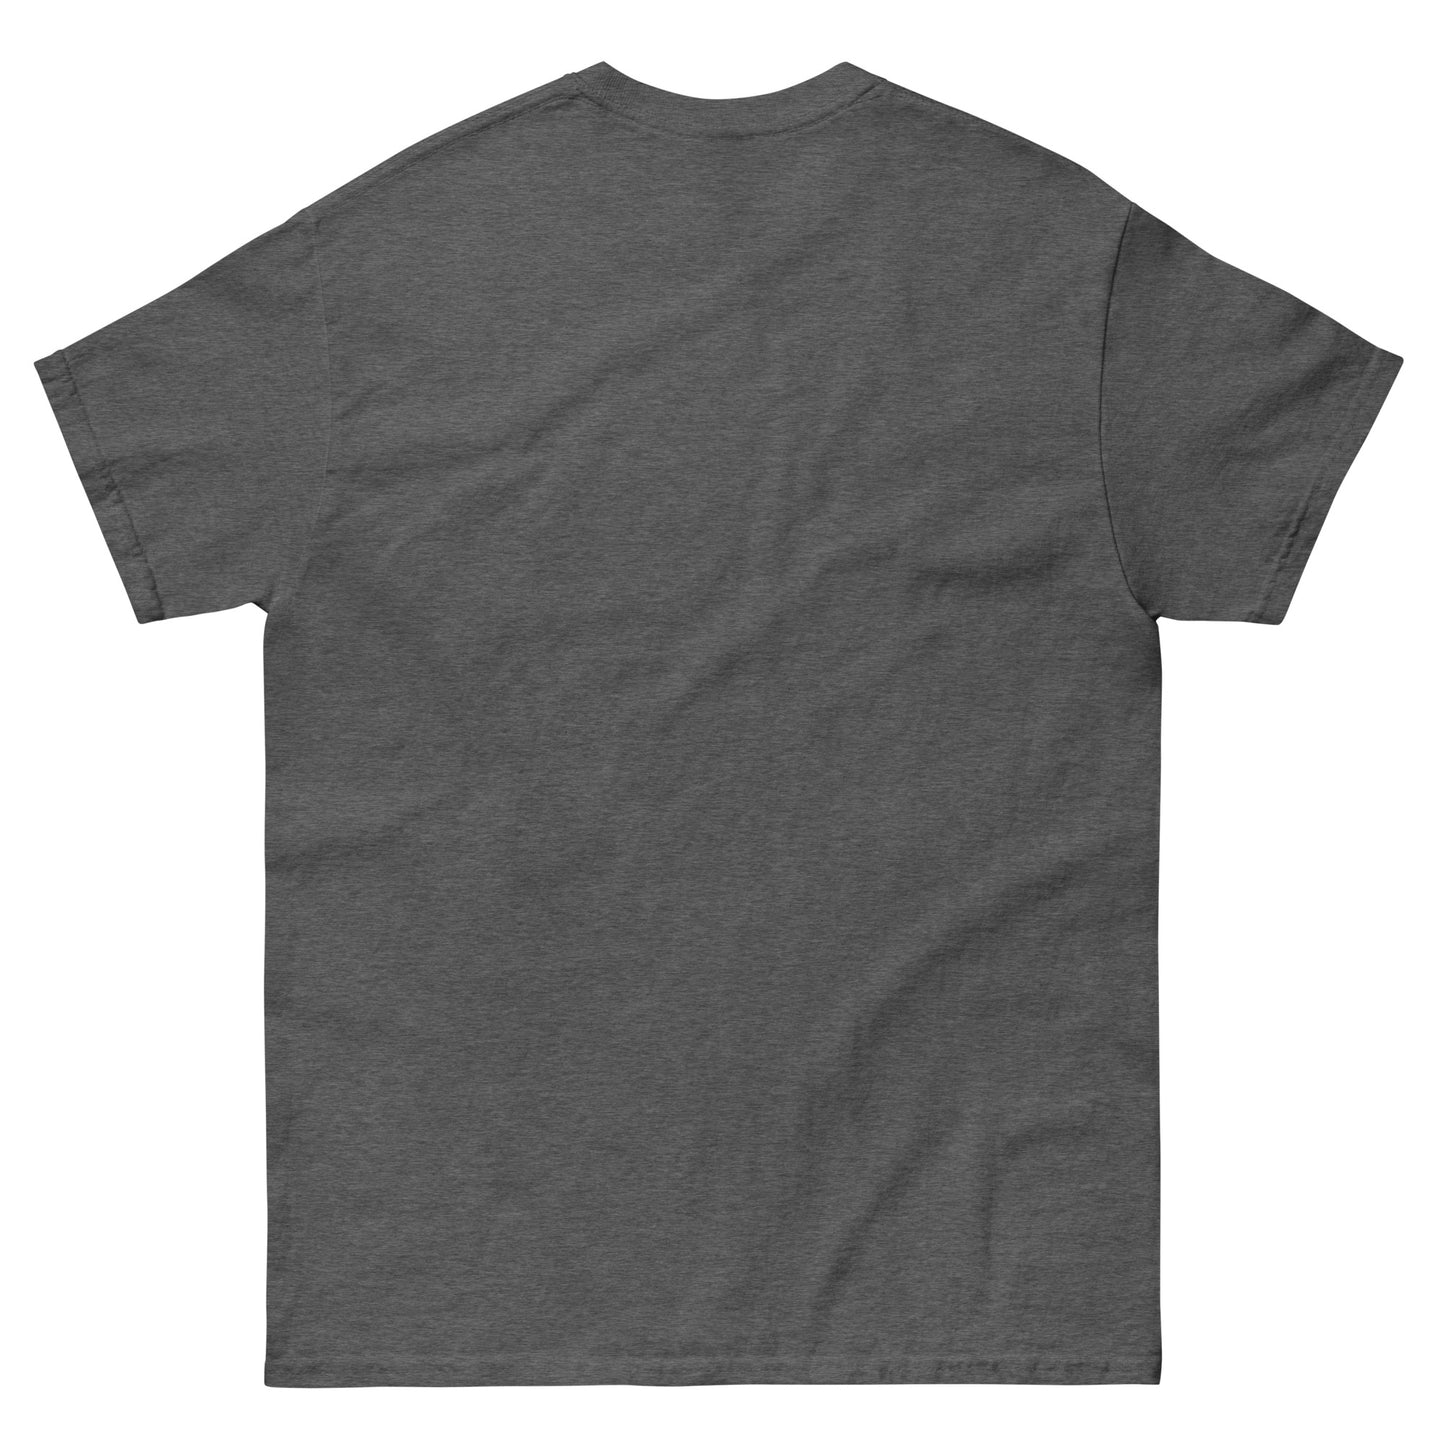 BooPatrick T-Shirt